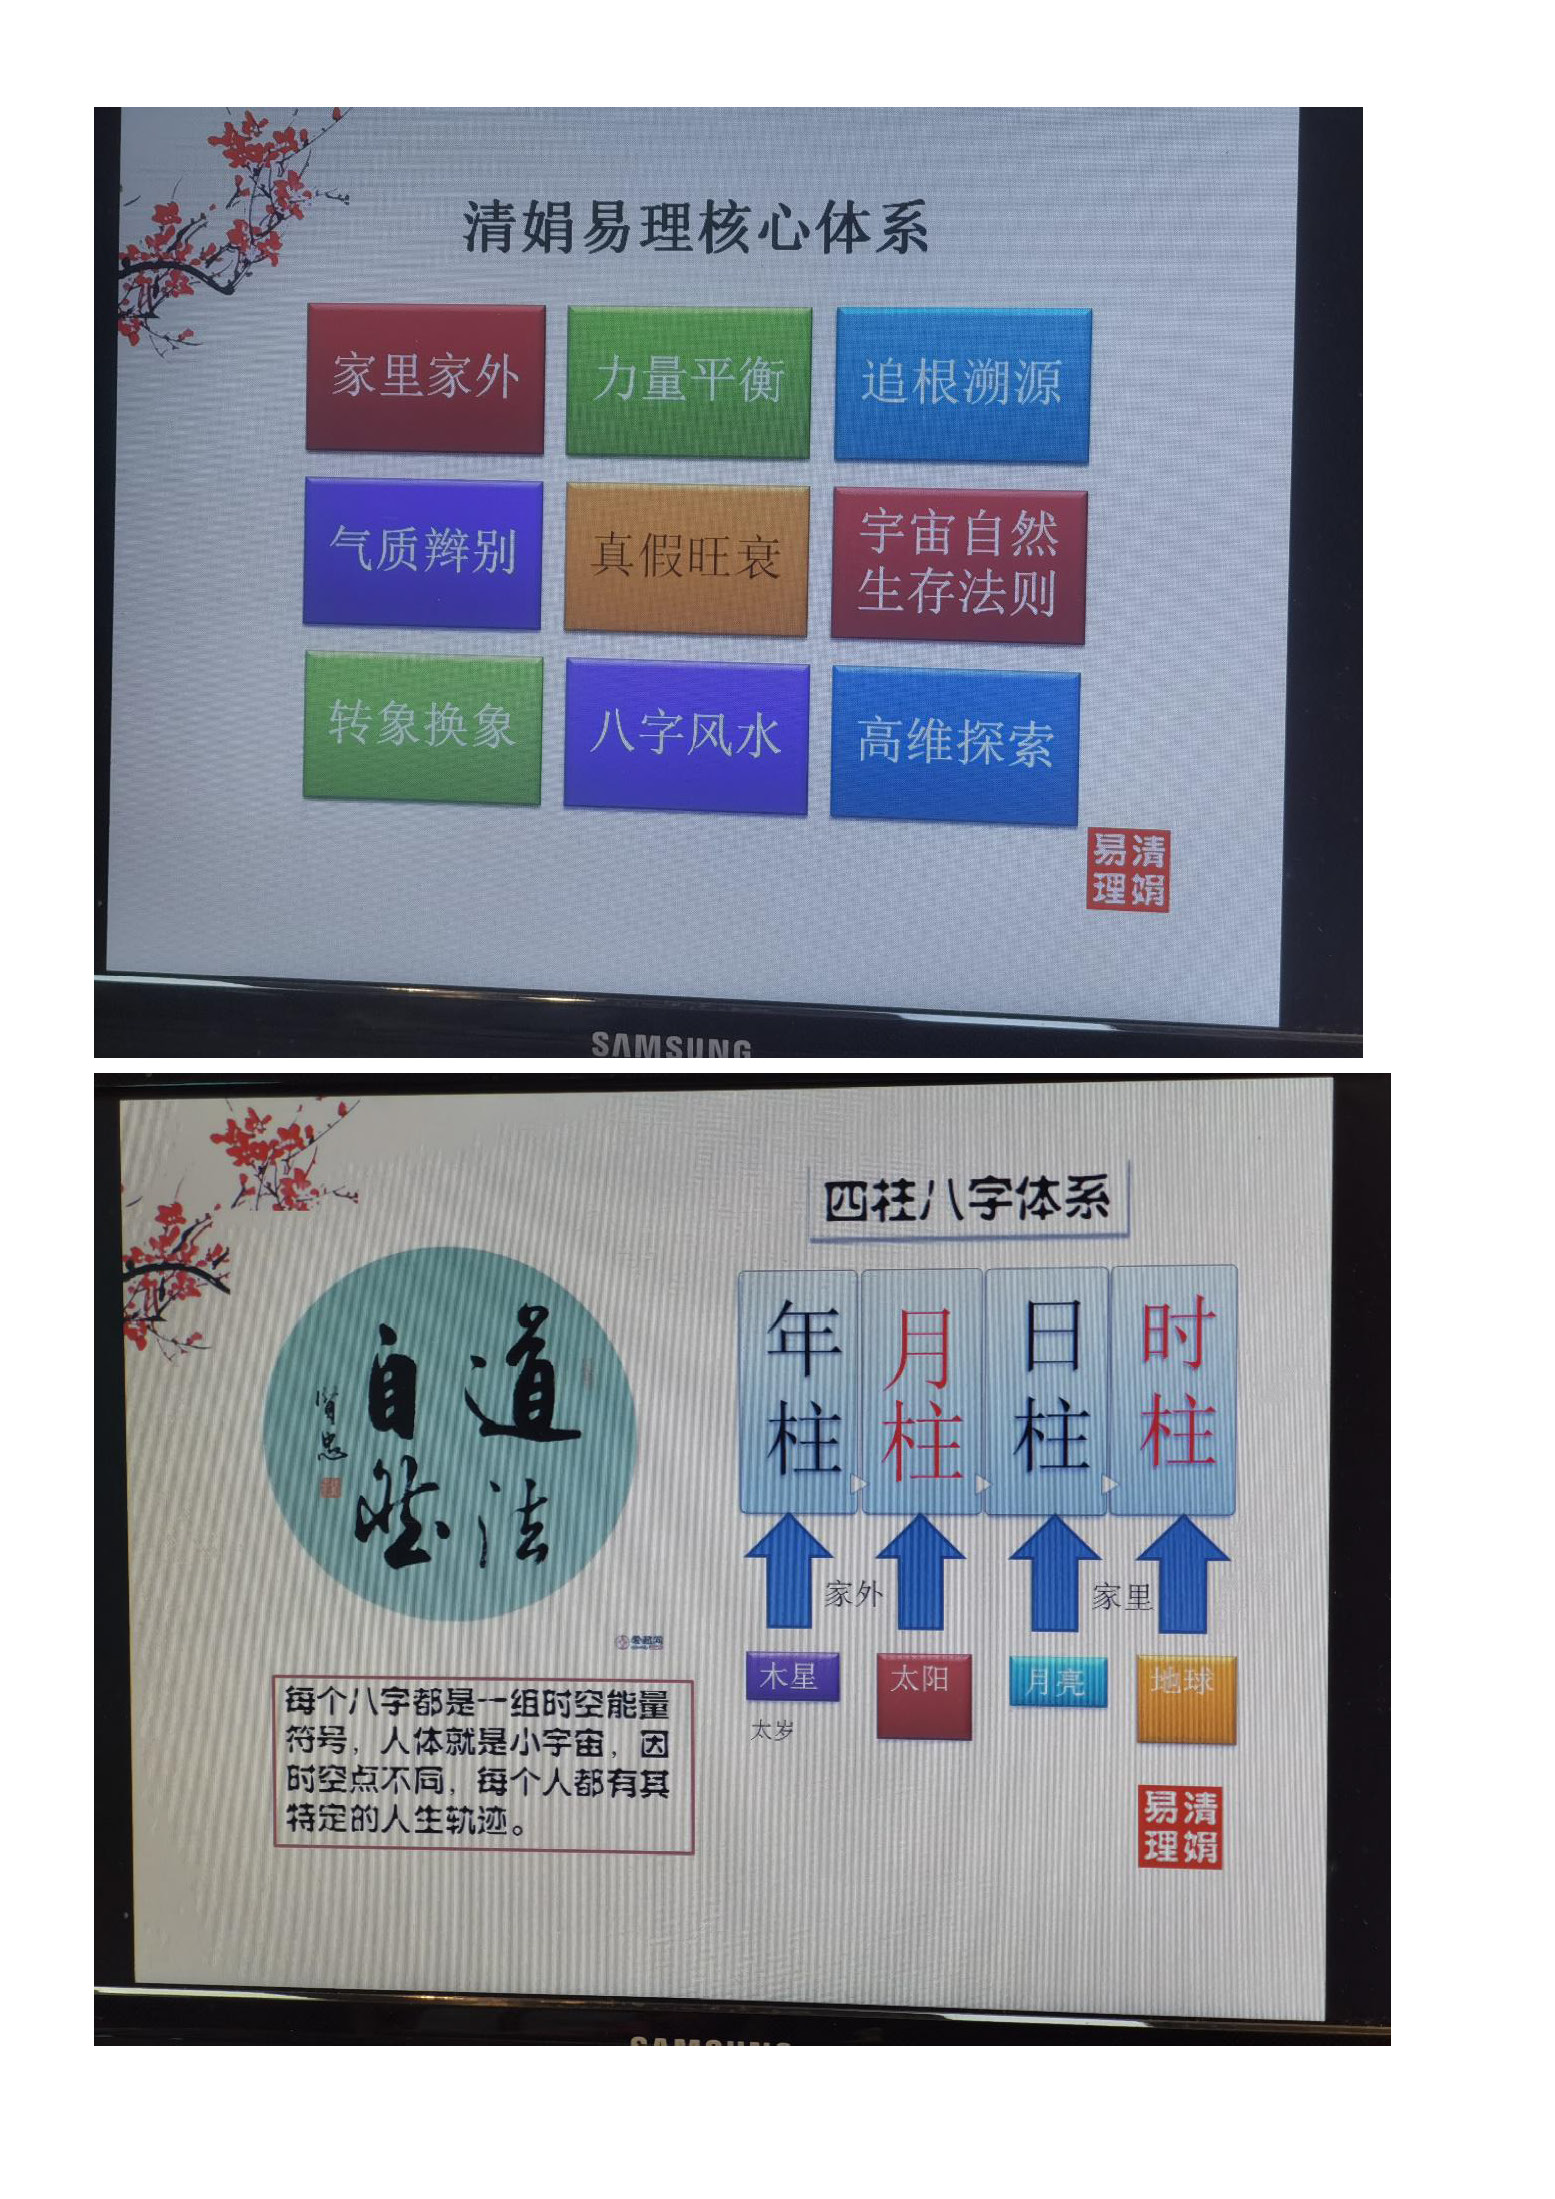 杨清娟盲派命理2021年1月扬州班录音教程